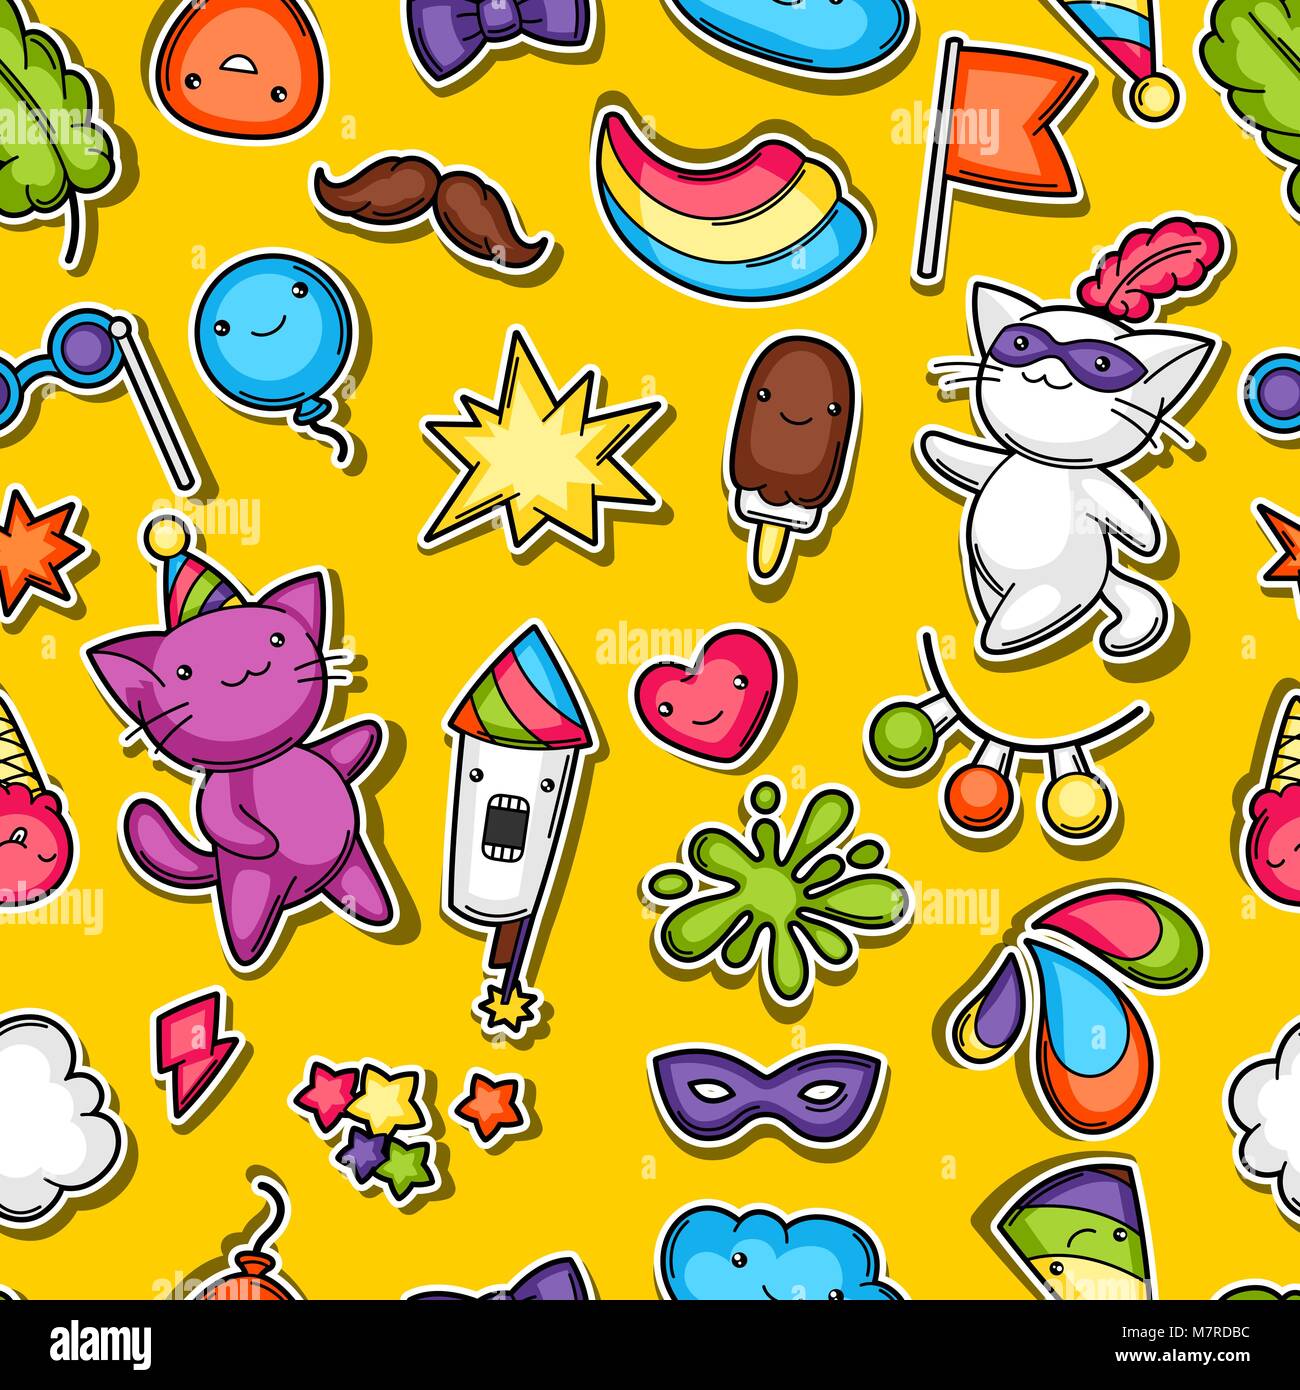 Karneval Party kawaii nahtlose Muster. Süße Aufkleber Katzen, Dekorationen für Feiern, Objekte und Symbole Stock Vektor